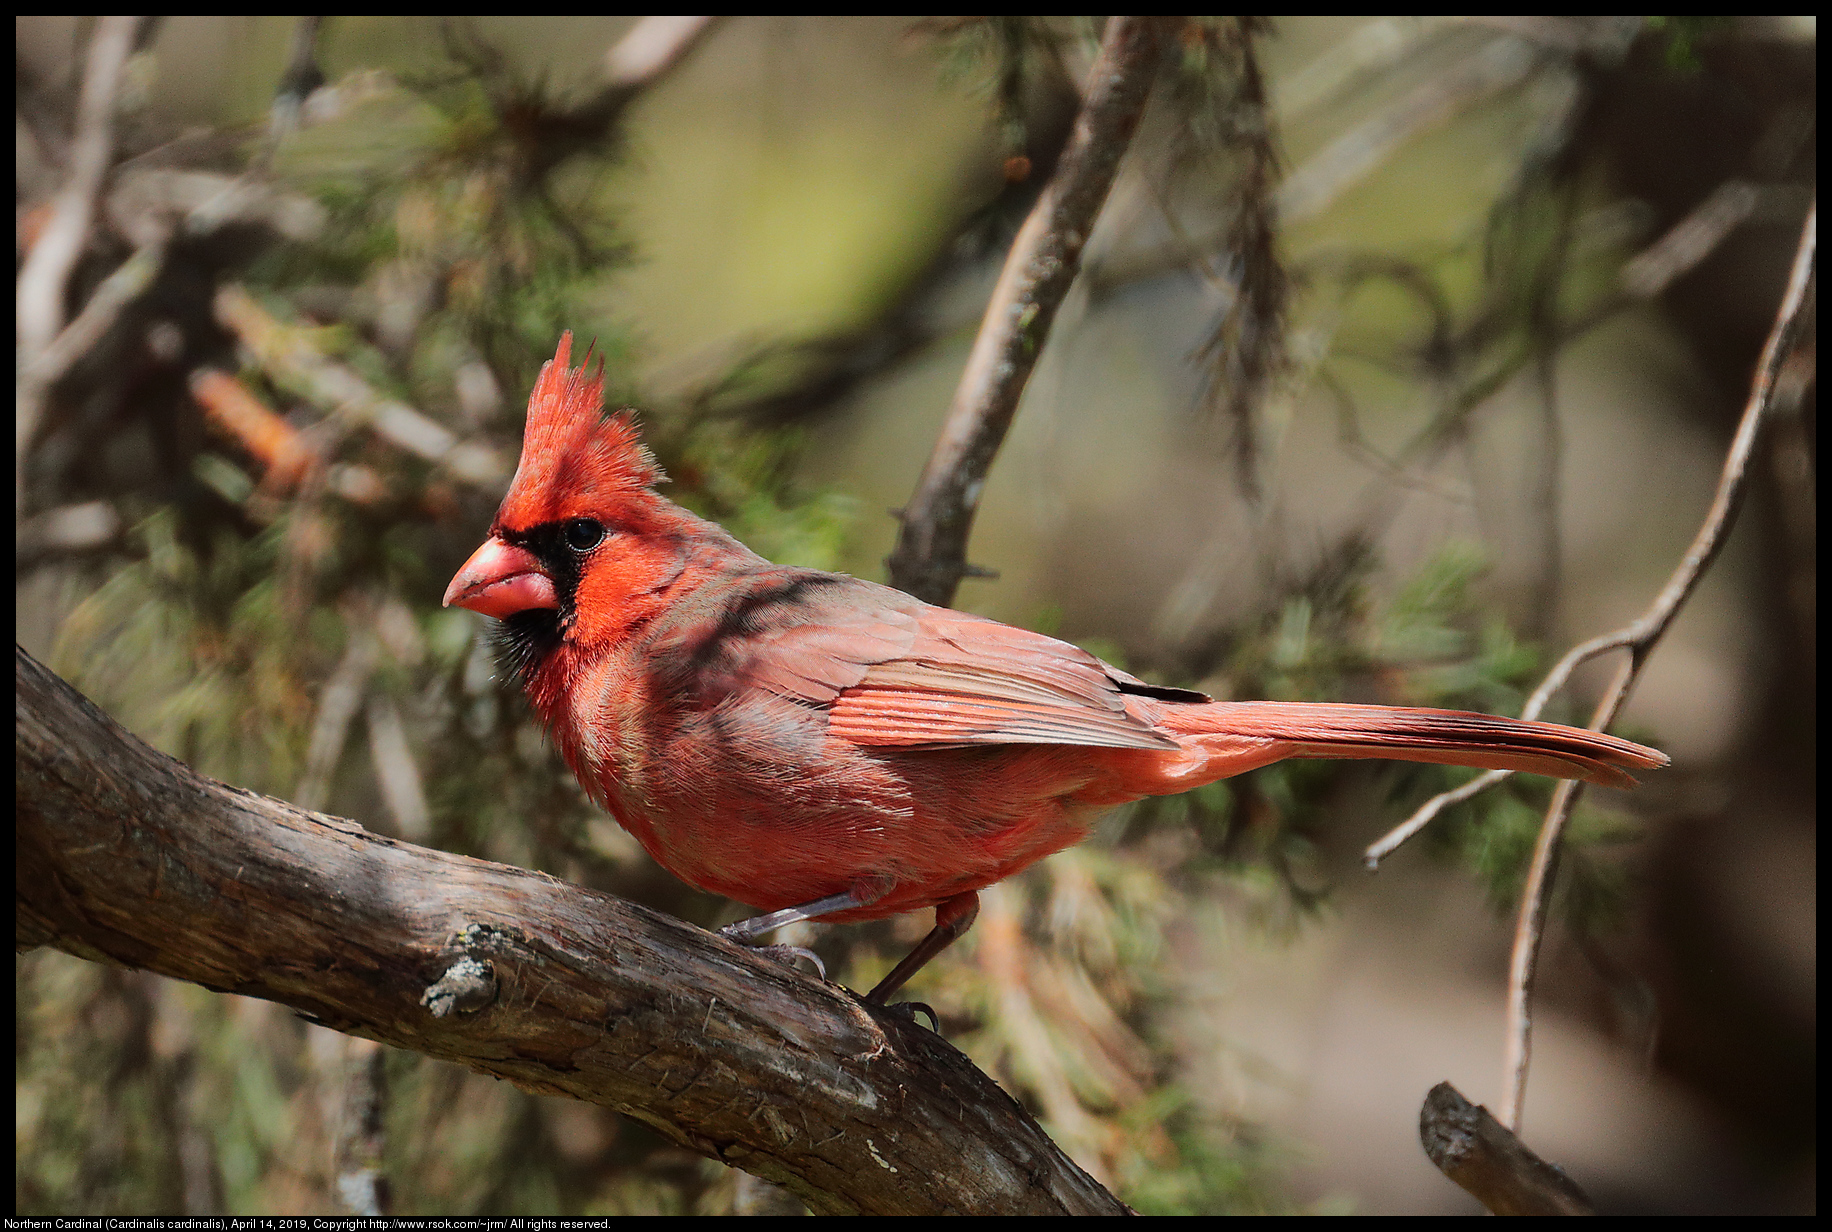 Northern Cardinal (Cardinalis cardinalis), April 14, 2019